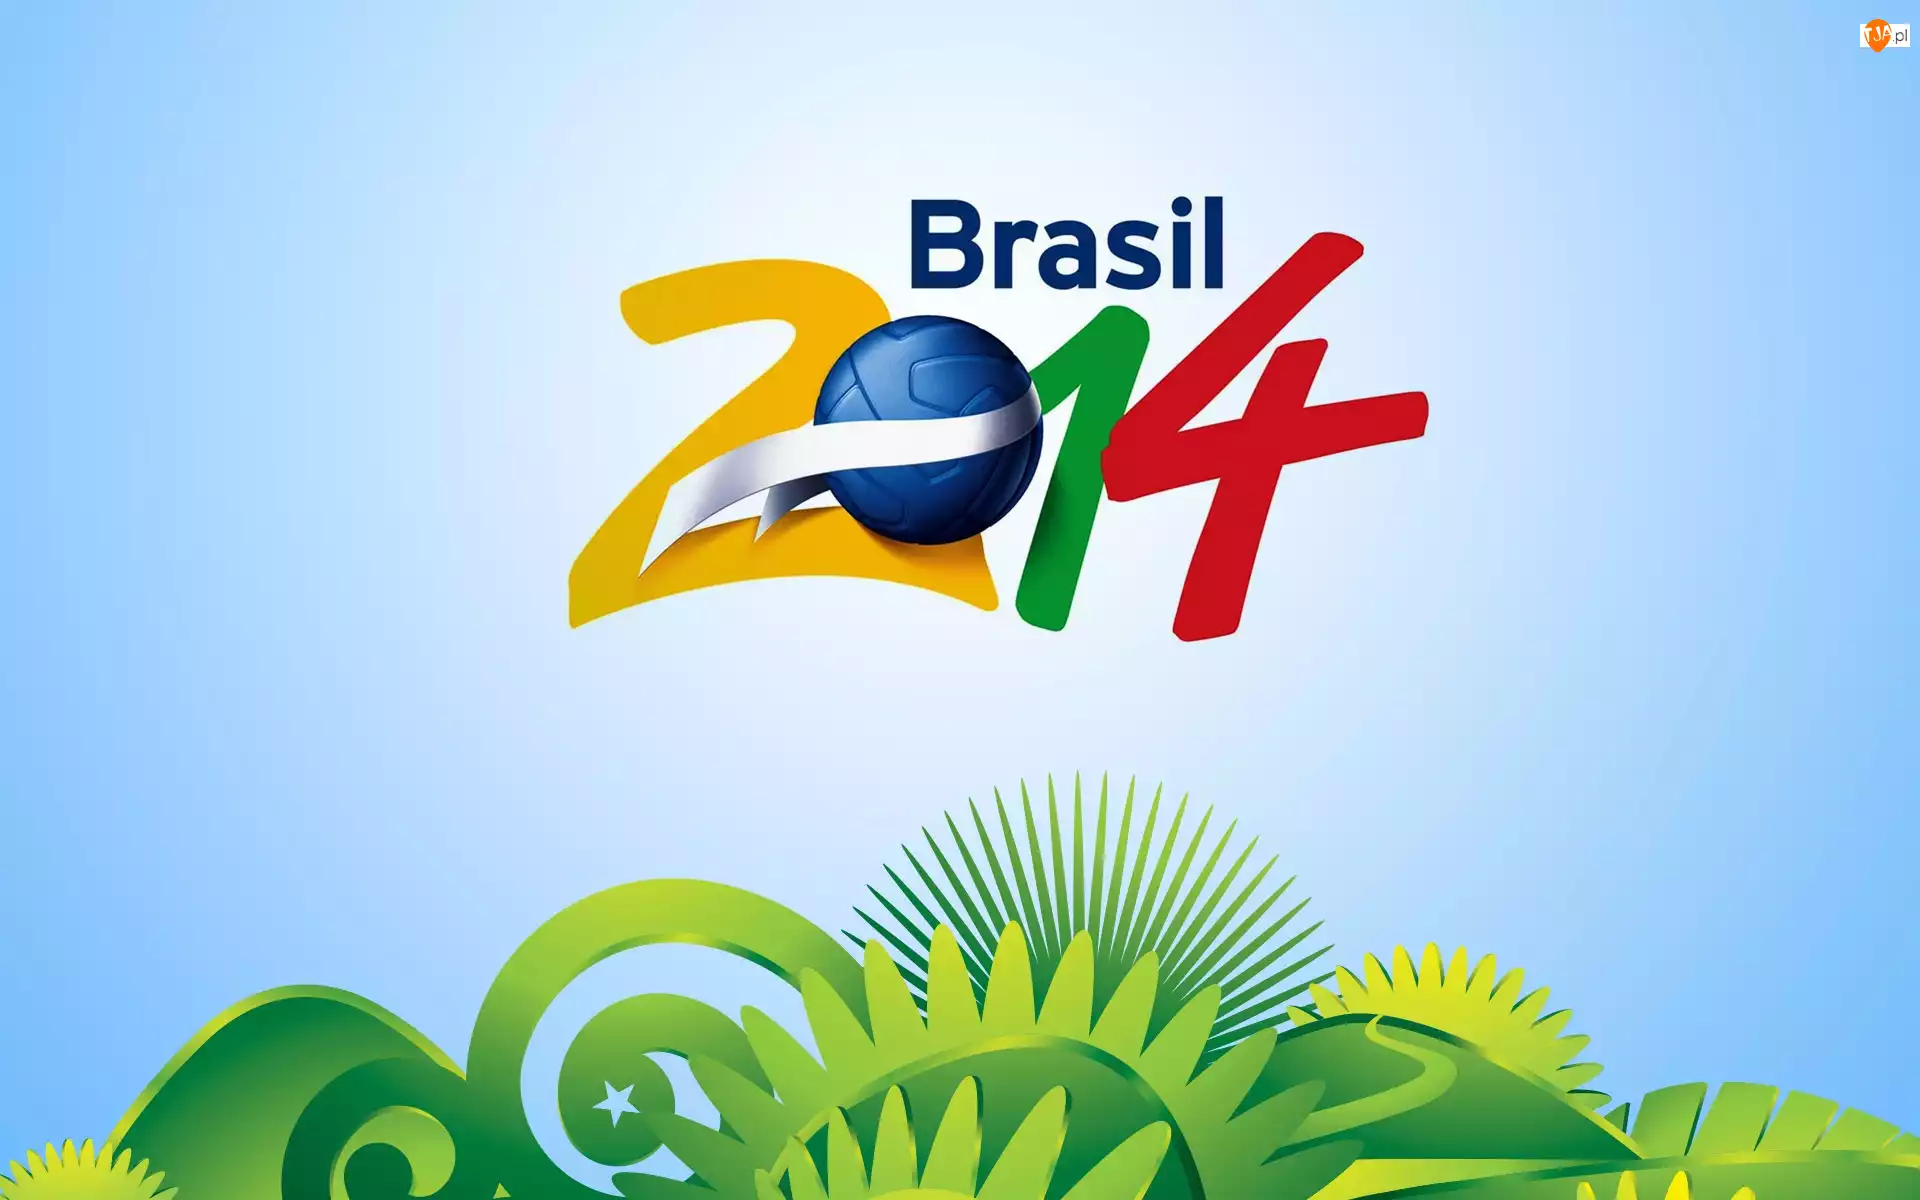 2014, Piłkarskie, Świata, Mistrzostwa, Brazylia